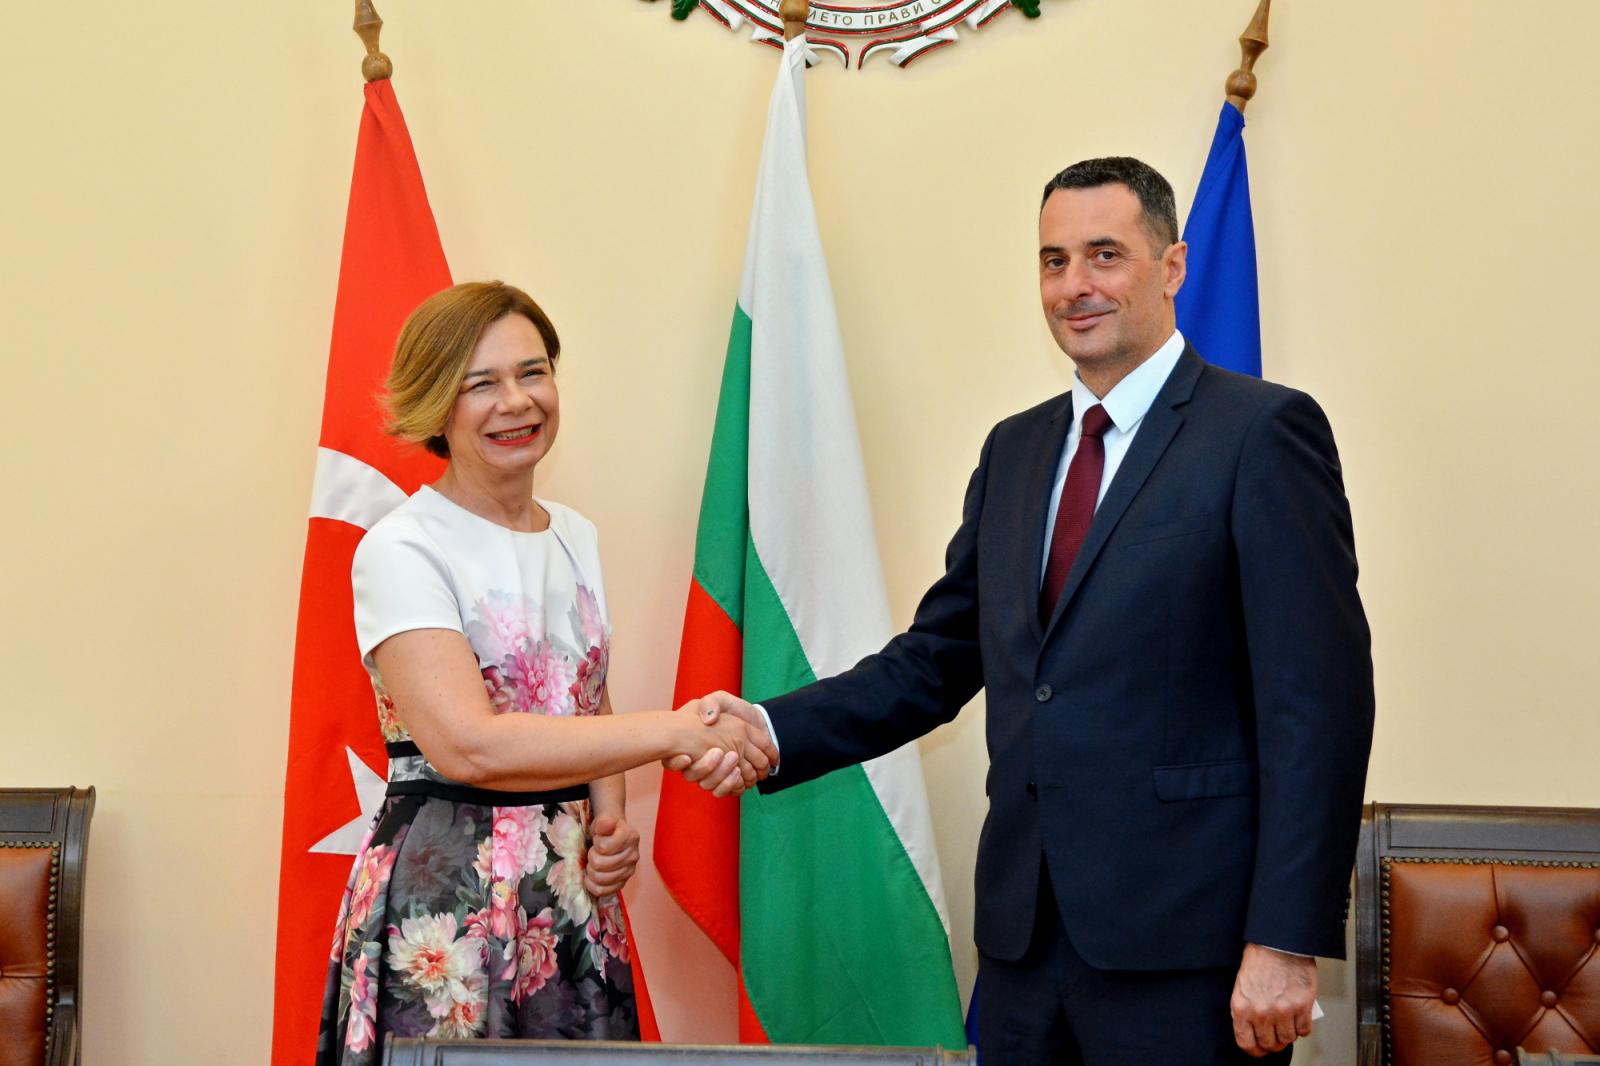 Bulgaristan Ulaştırma Bakanı Gvozdeykov, Türkiye’nin Sofya Büyükelçisi Sekizkök ile görüştü 